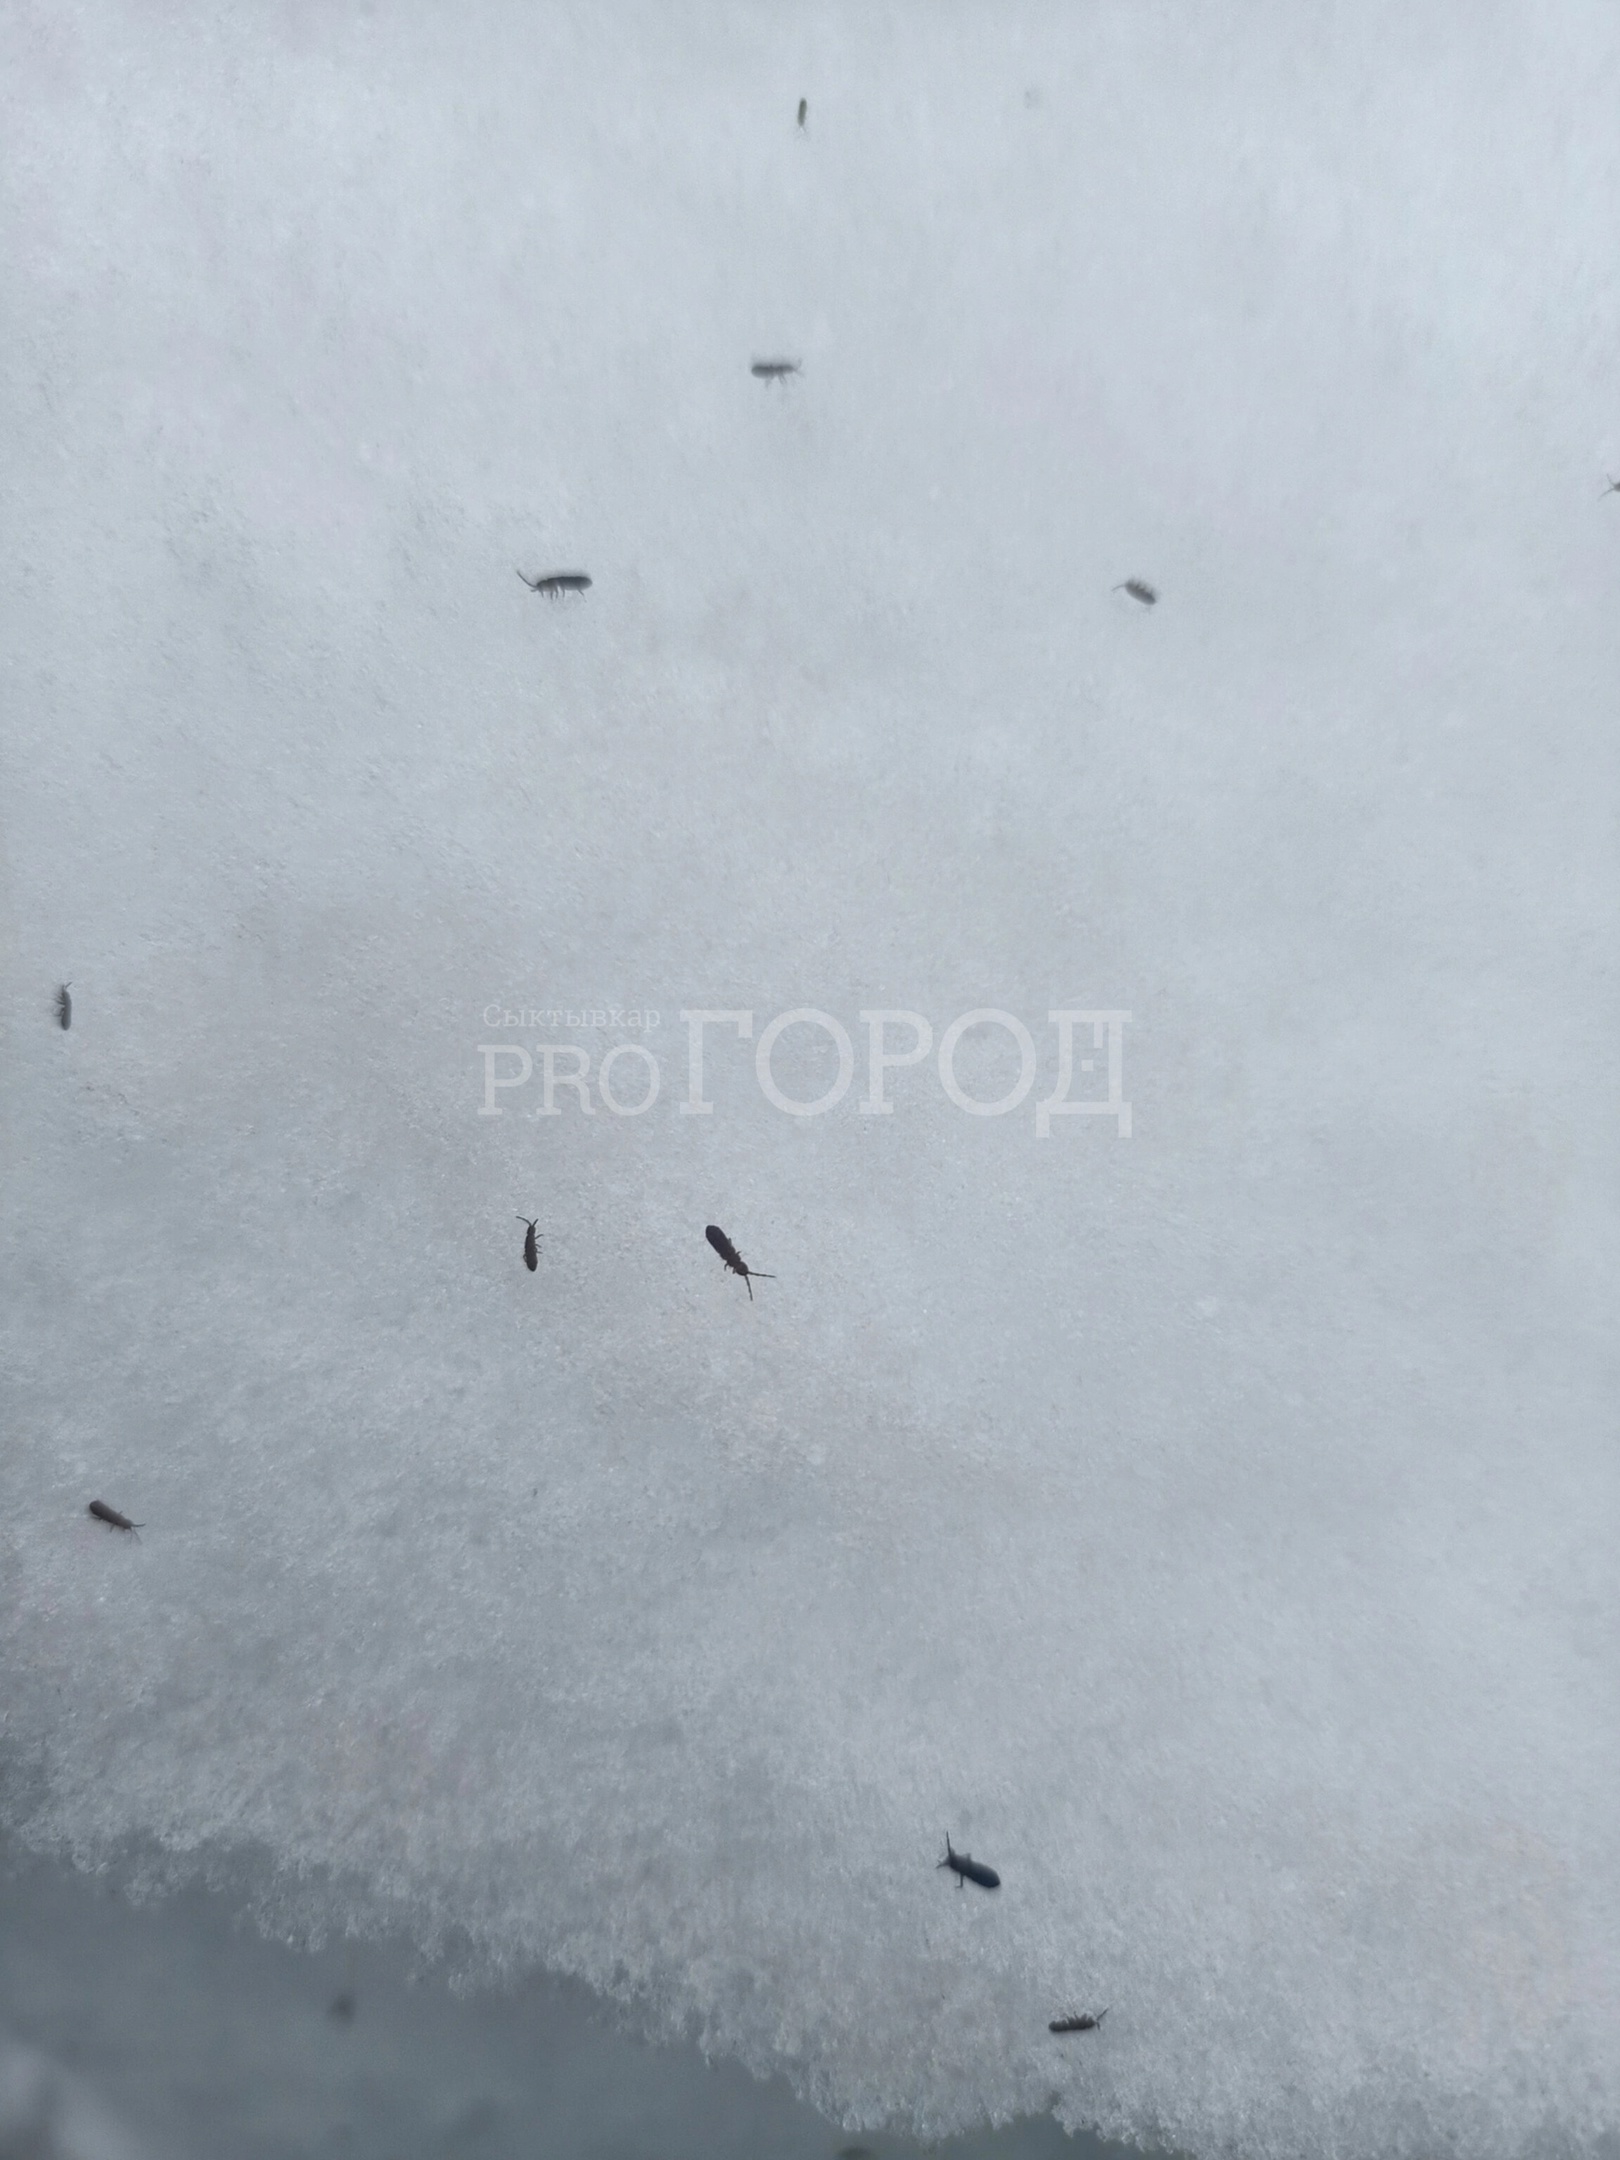 “Весь снег усыпан блохами”: сыктывкарку напугали насекомые около дома